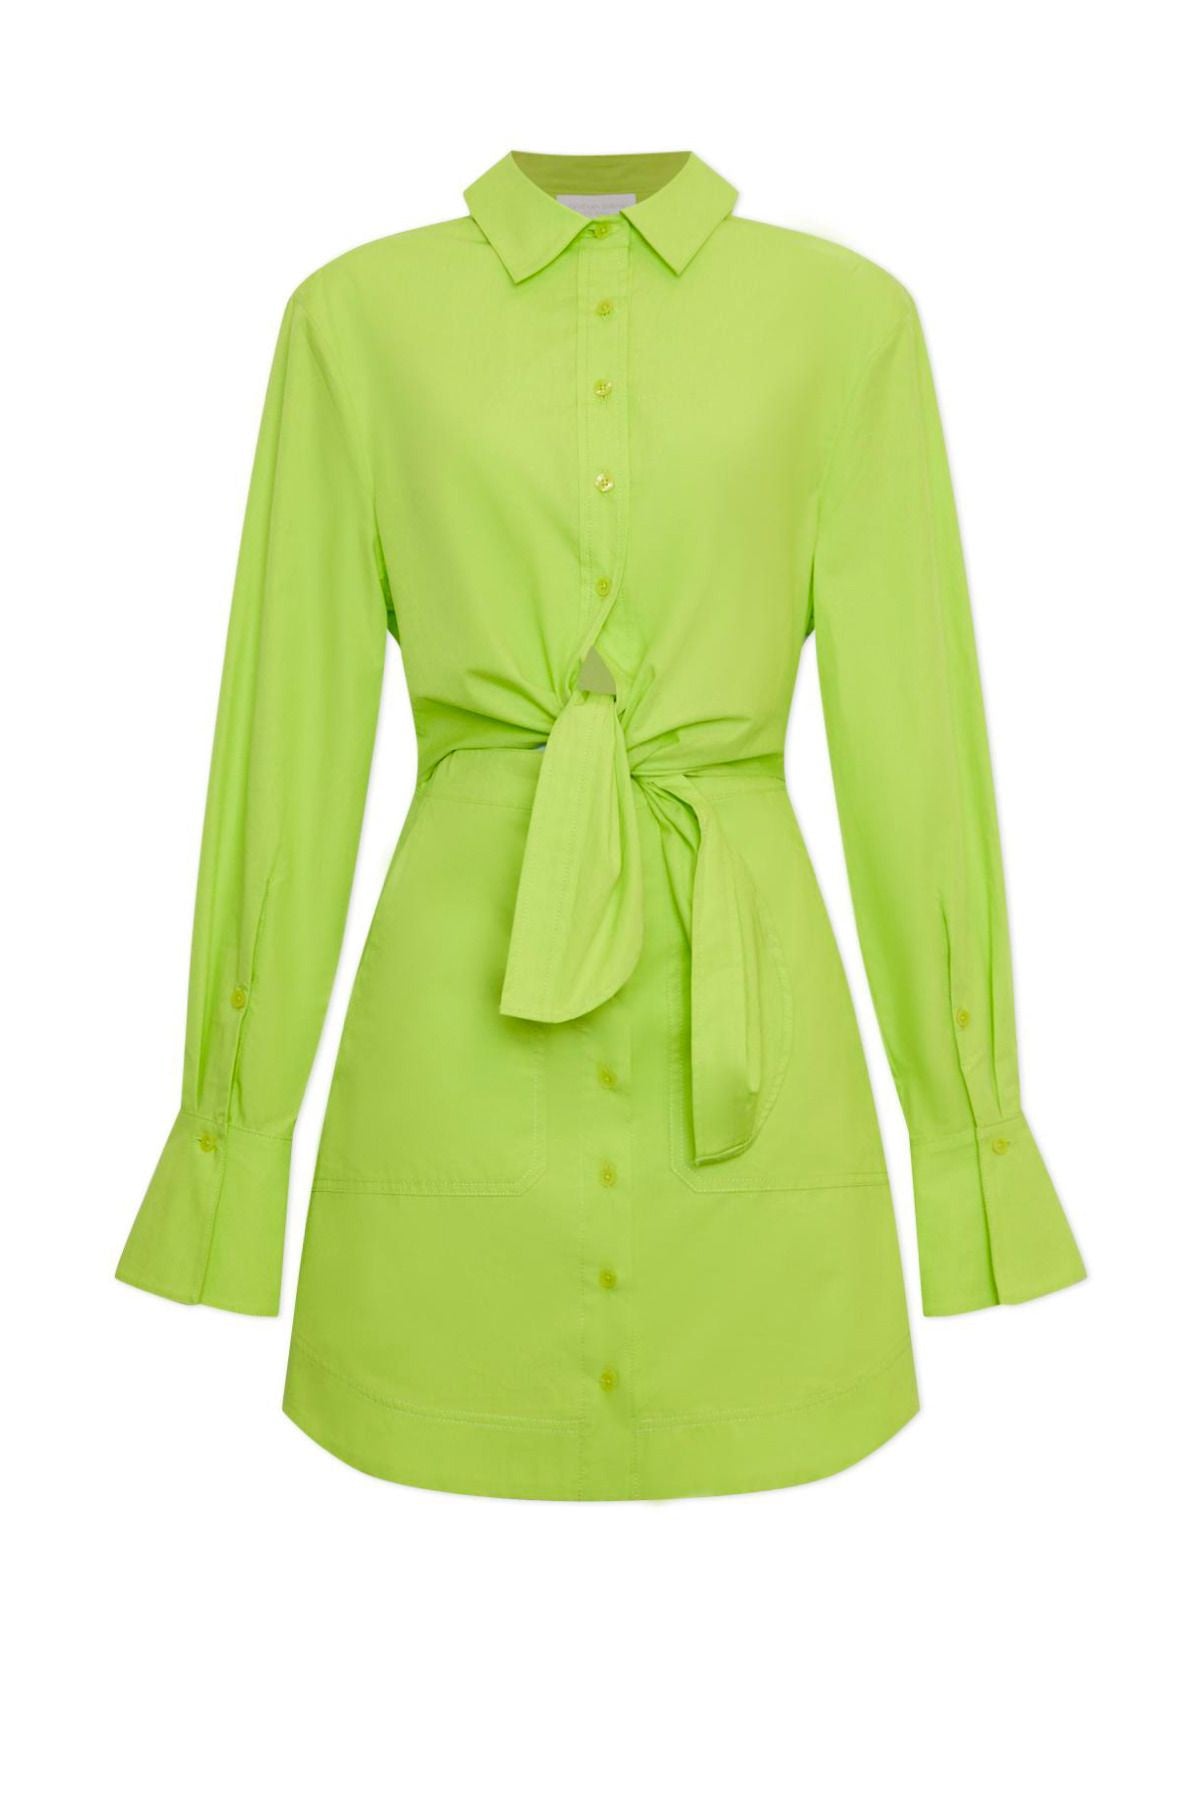 Simkhai Colbi Cotton Poplin Mini Shirt Dress - Acid Lime